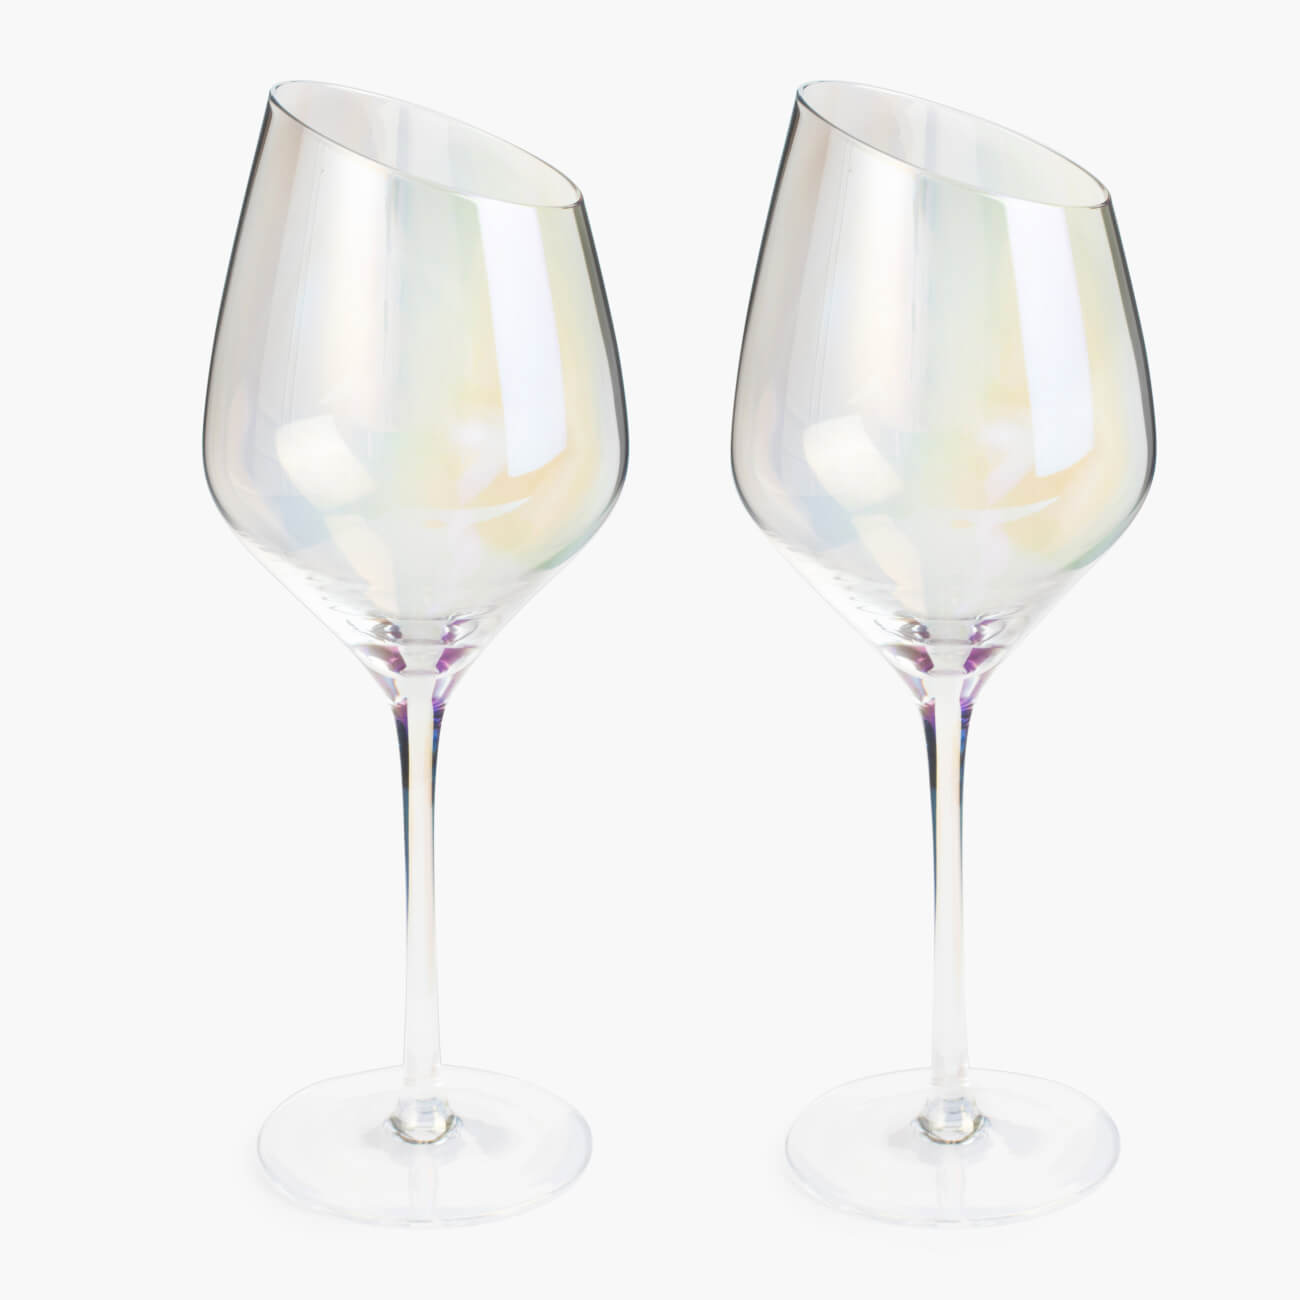 Бокал для белого вина, 460 мл, 4 шт, стекло, перламутр, Charm L polar бокал для красного вина 560 мл 4 шт charm l